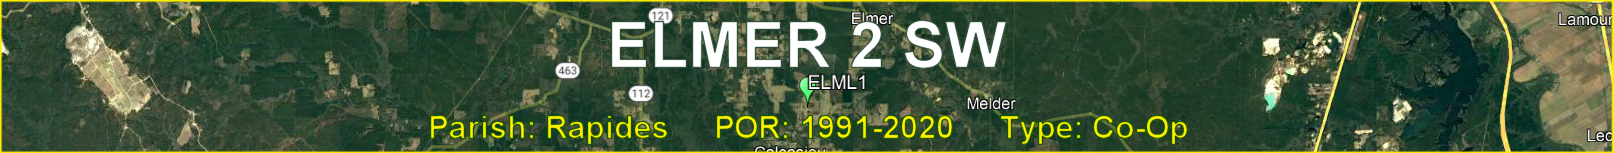 Title image for Elmer 2 SW